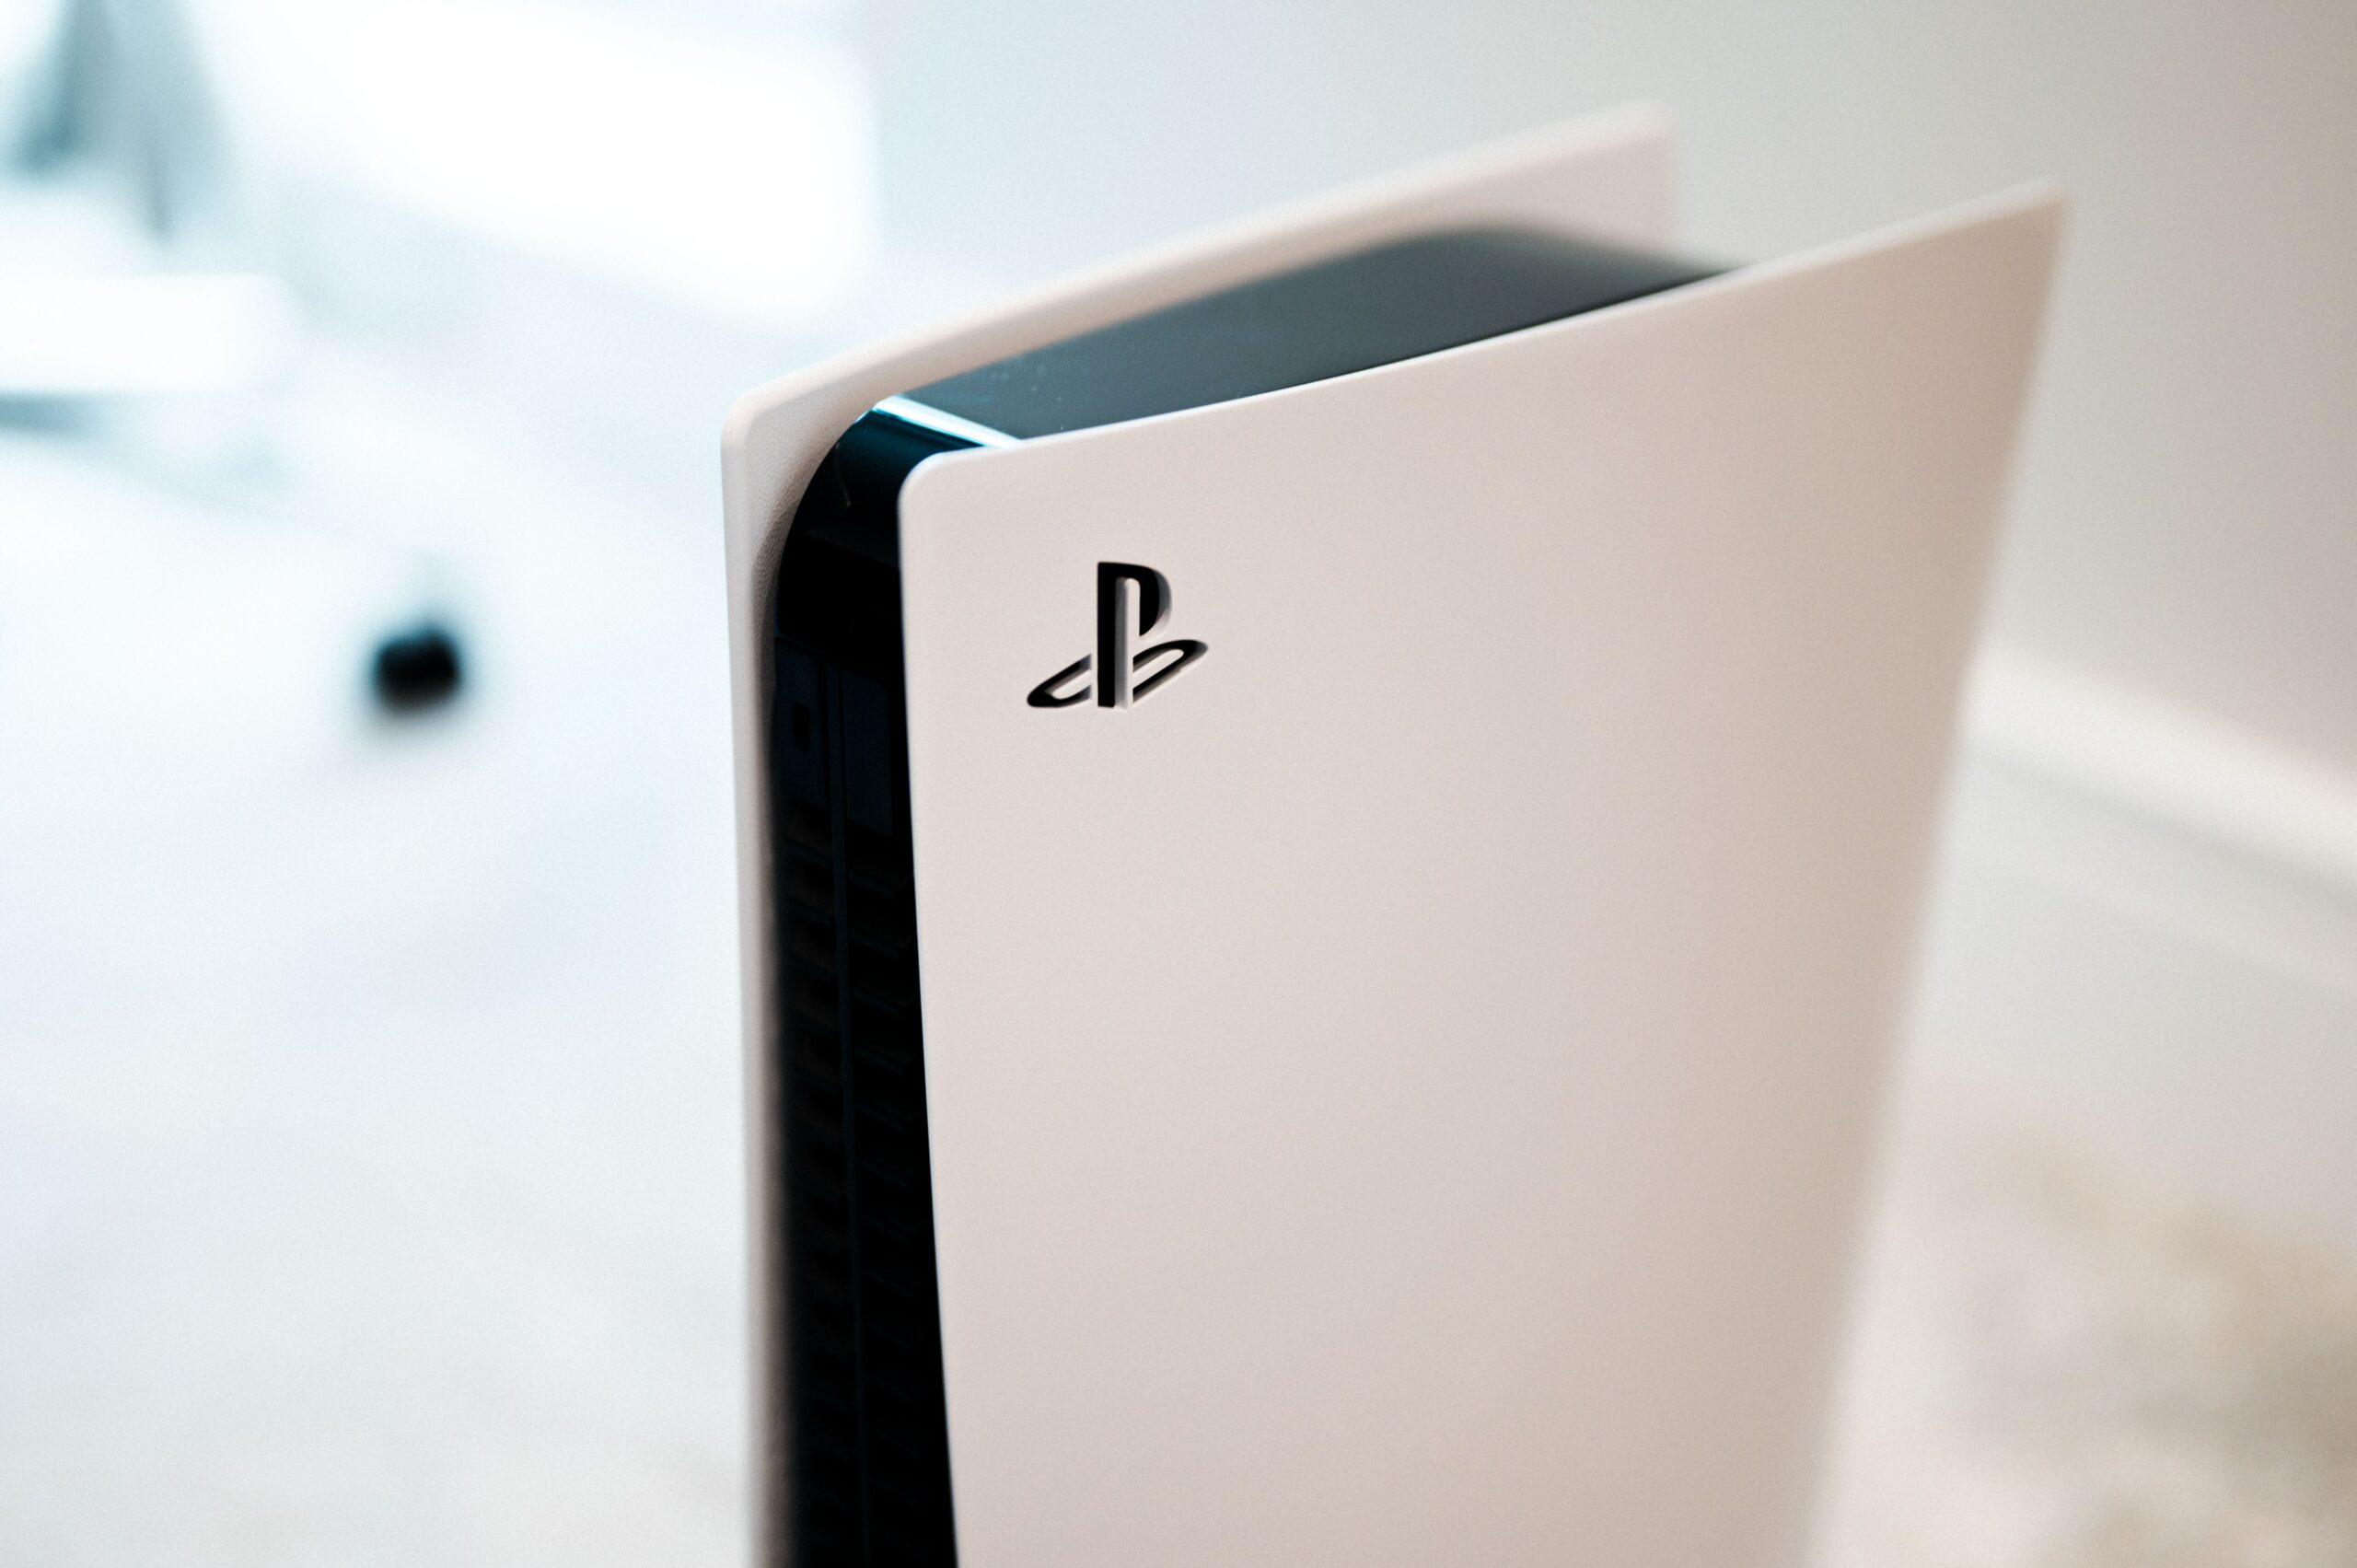 PS5 Slim: Data de lançamento, preço, especificações e rumores; Confira